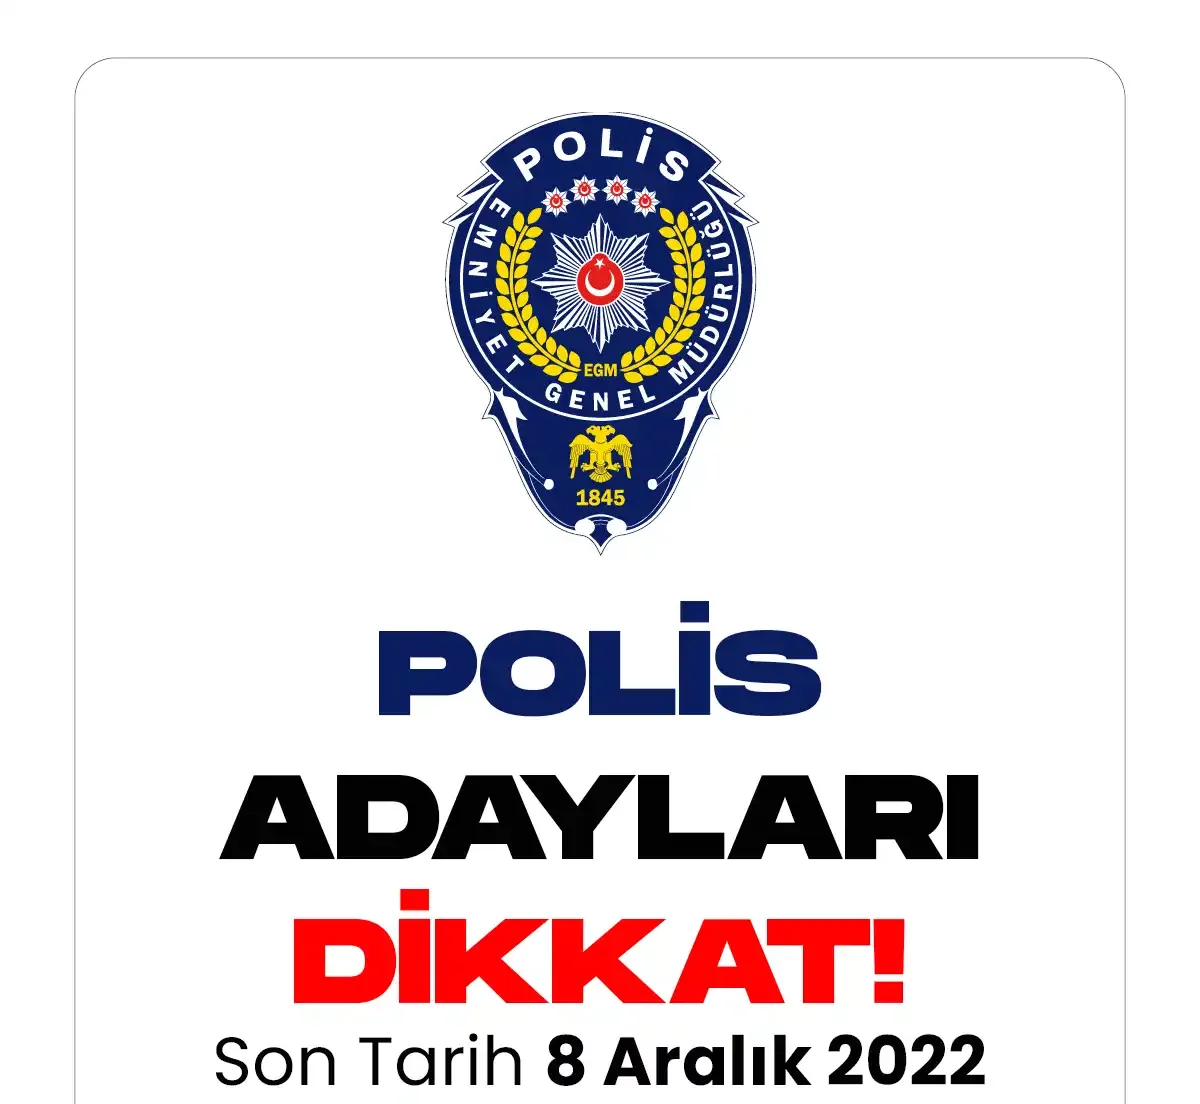 Yeni polis alımı için süreç devam ediyor. 29. dönem POMEM ile 13 bin polis alımı yapılacak.